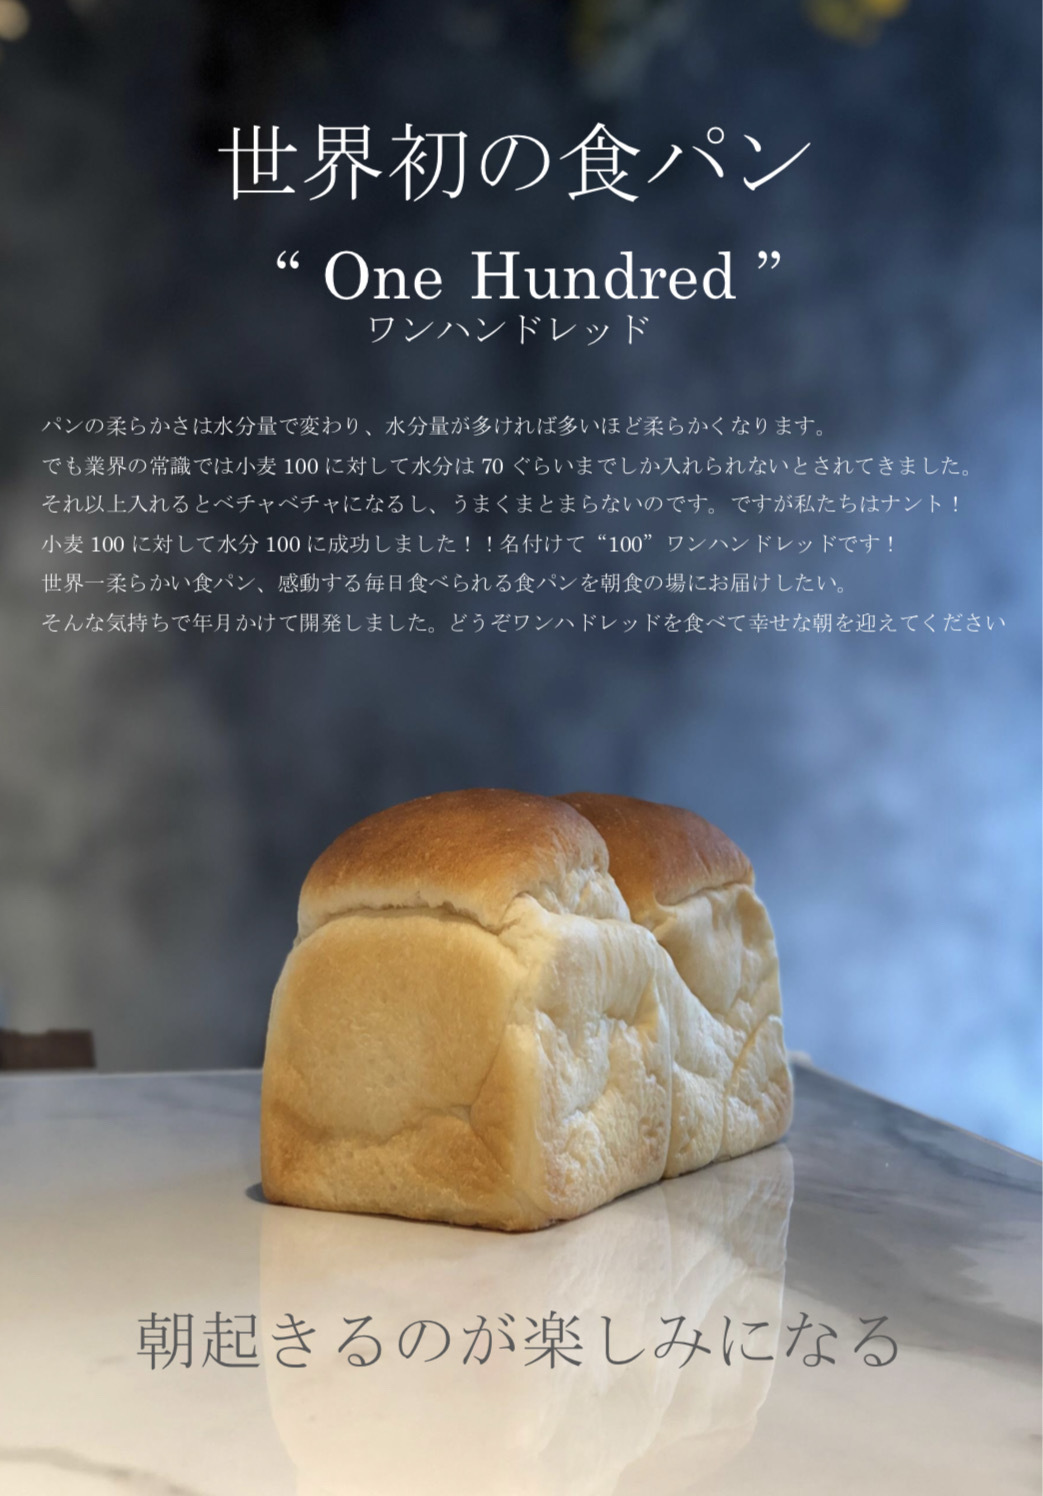 埼玉県・春日部初上陸！世界初の食パンで東京・名古屋で連日行列！
「One Hundred Bakery春日部店」が11月13日にNEW OPEN！